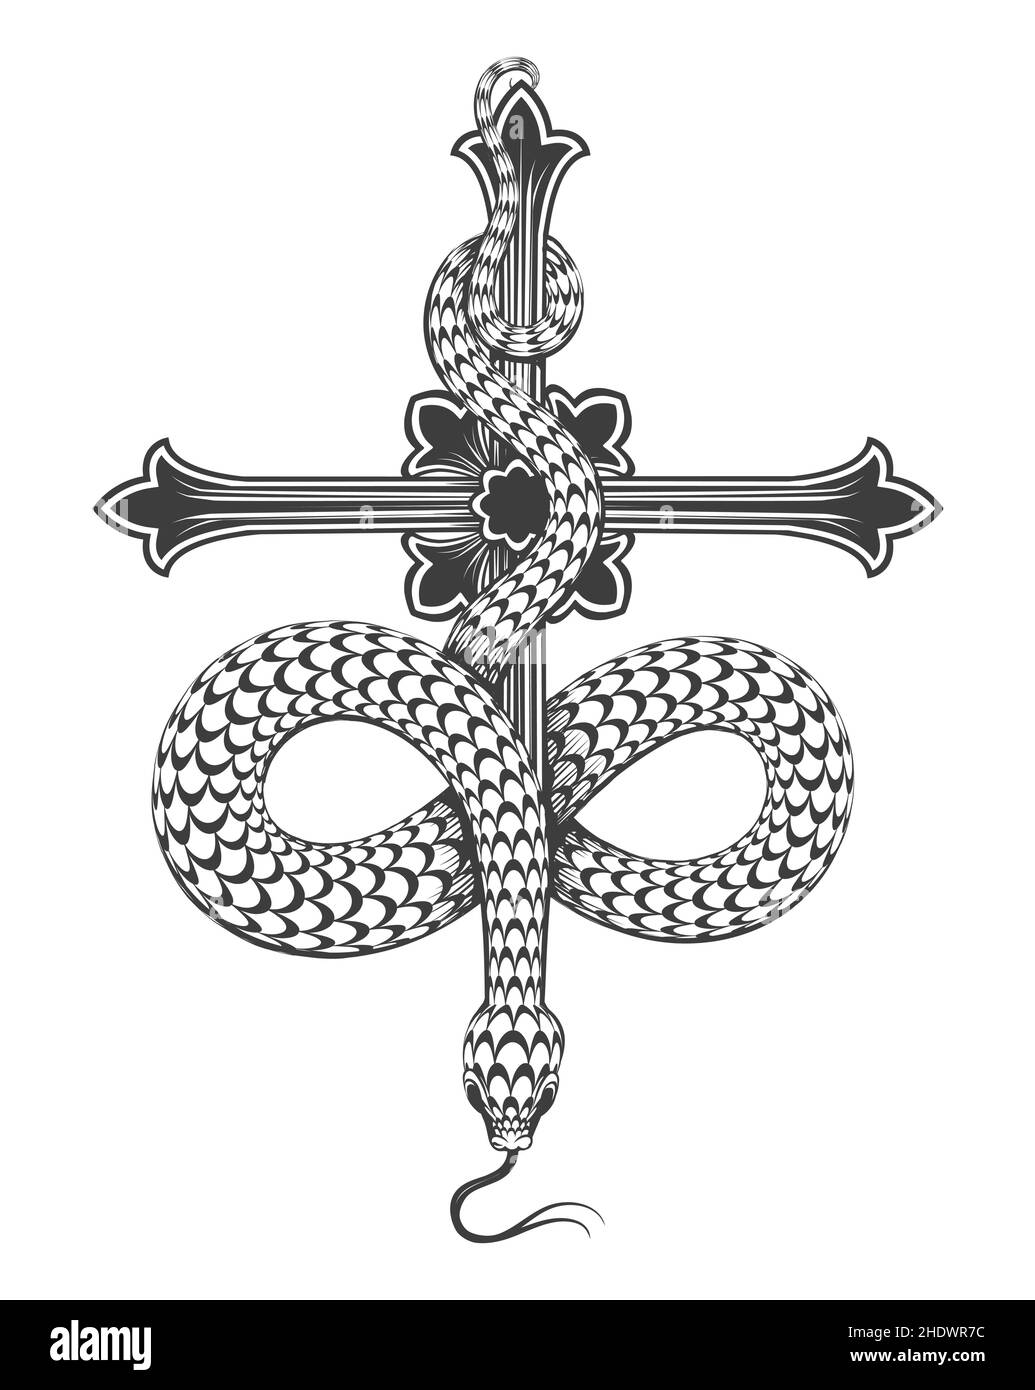 Nero e Wite Tattoo di serpente su una croce isolato su bianco. Illustrazione vettoriale. Illustrazione Vettoriale